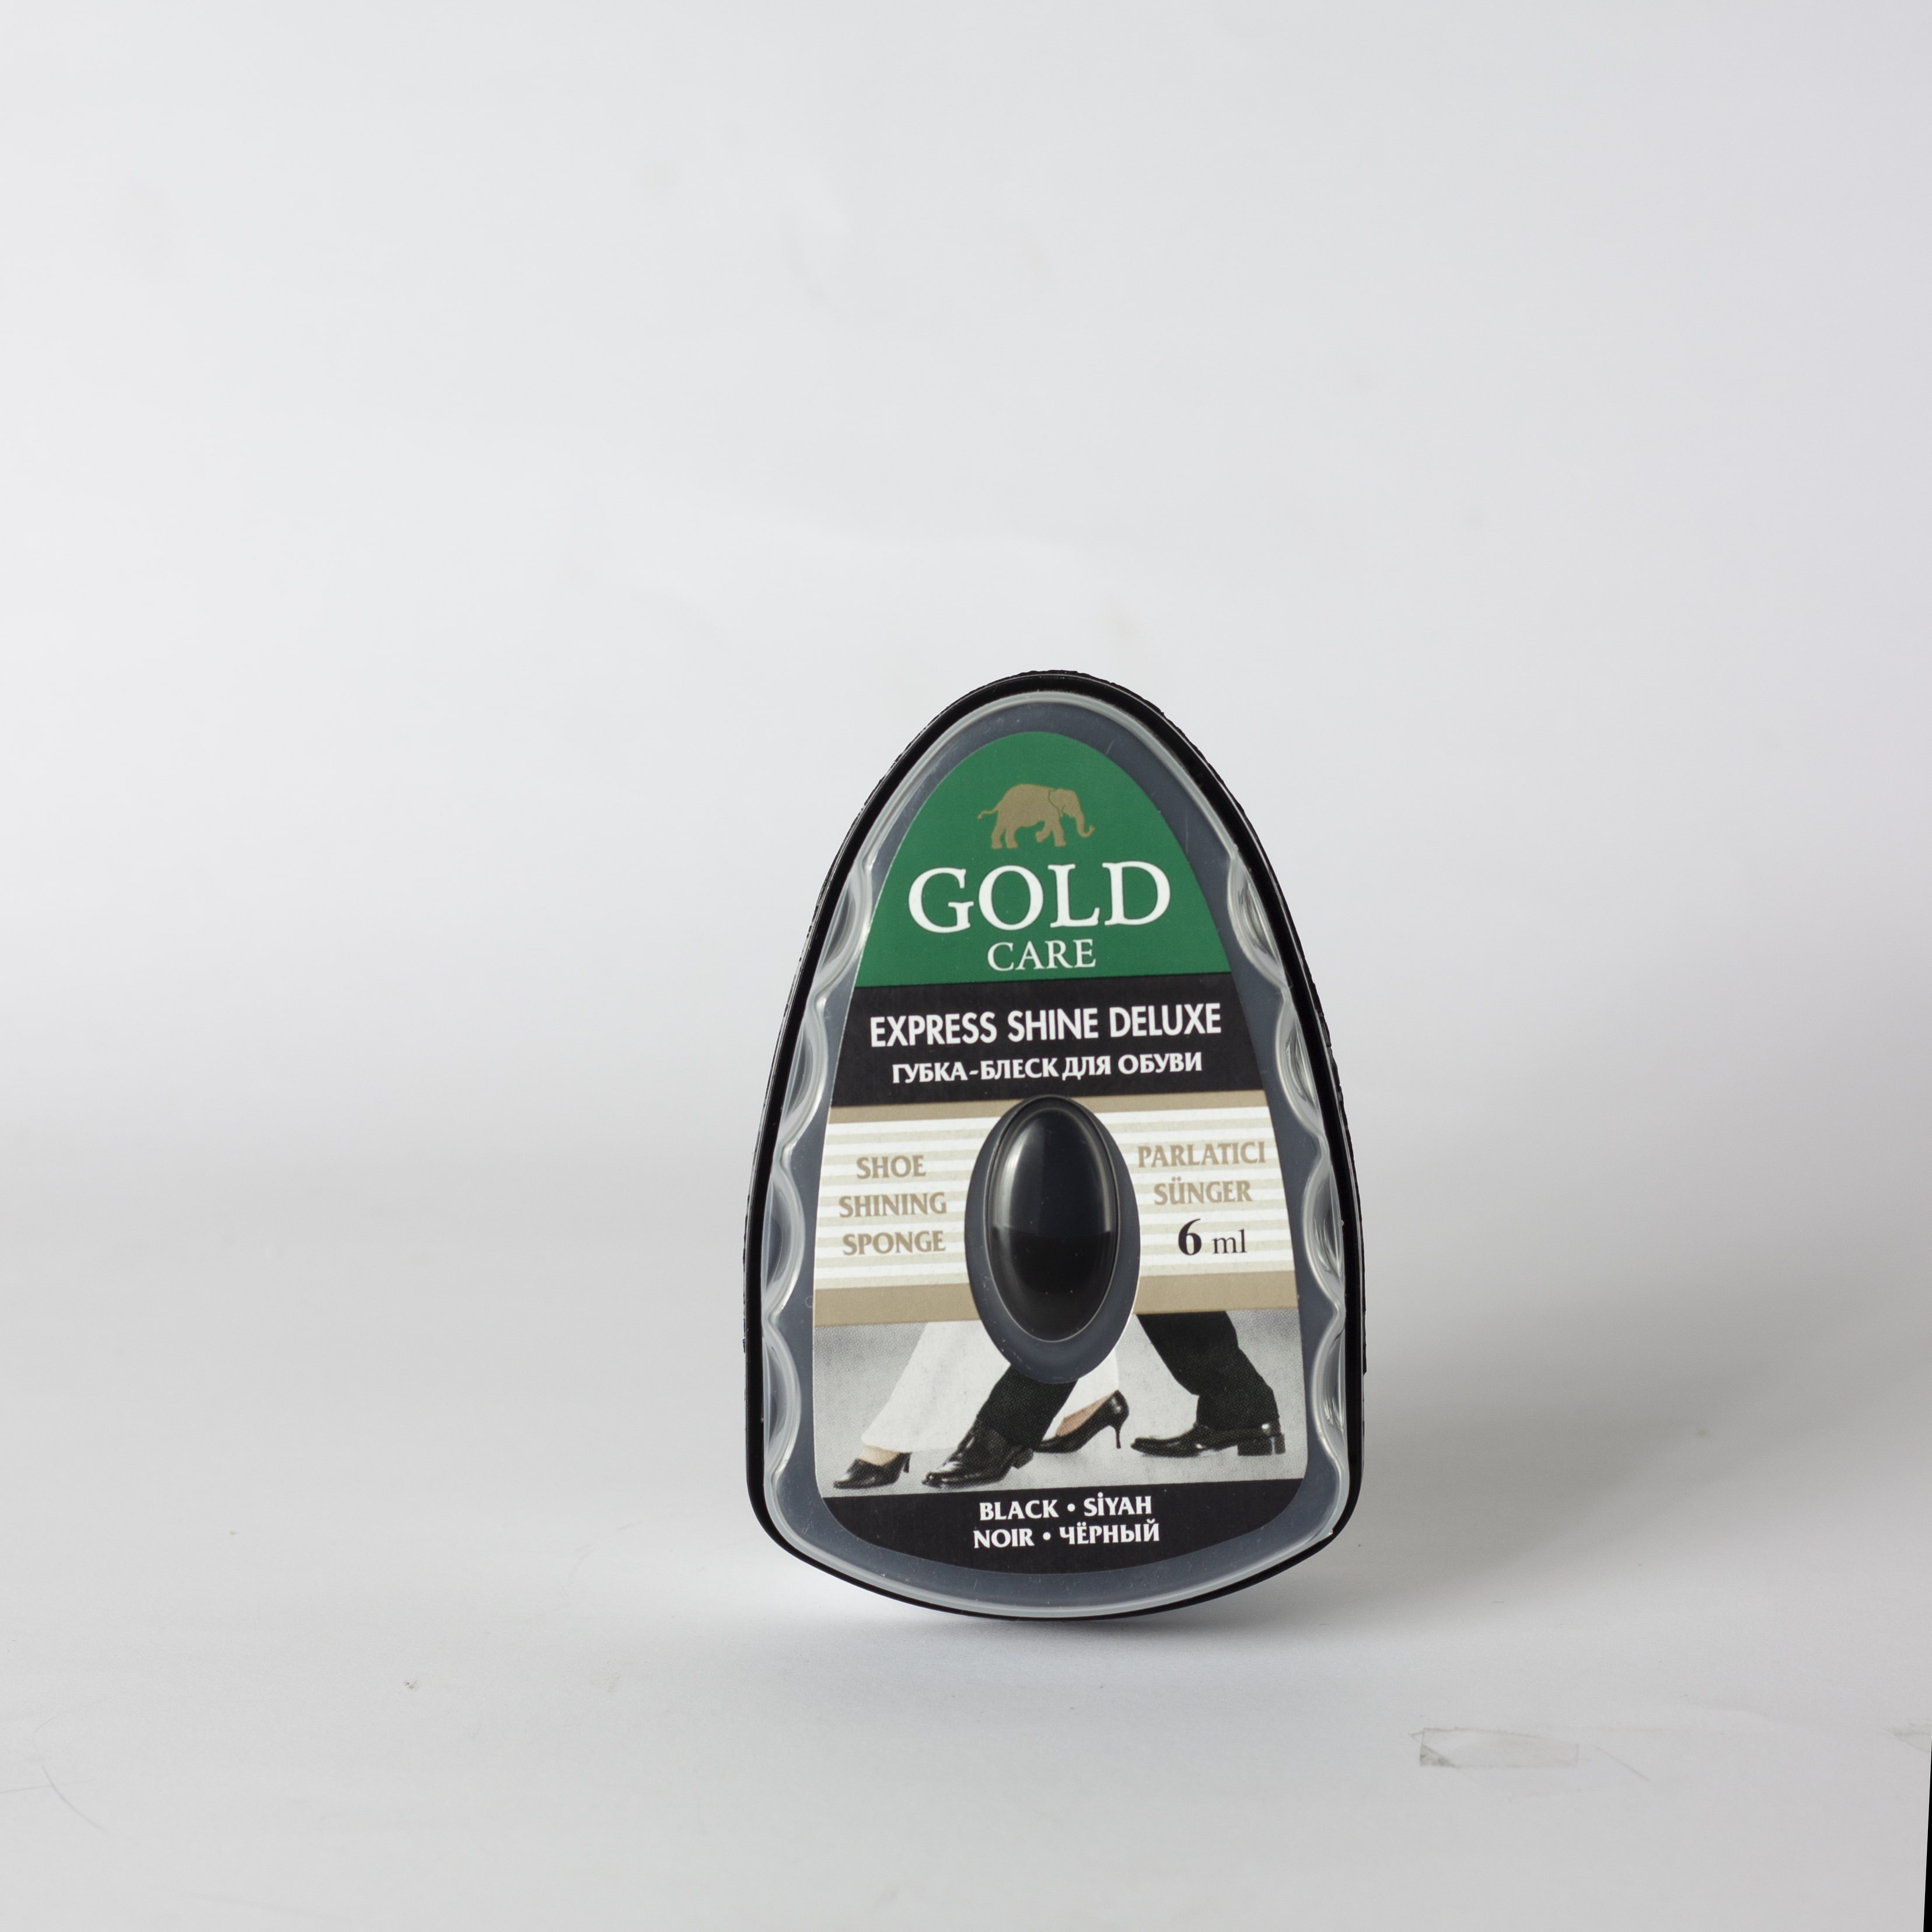 واکس مشکی مایع GOLD | کد 5009